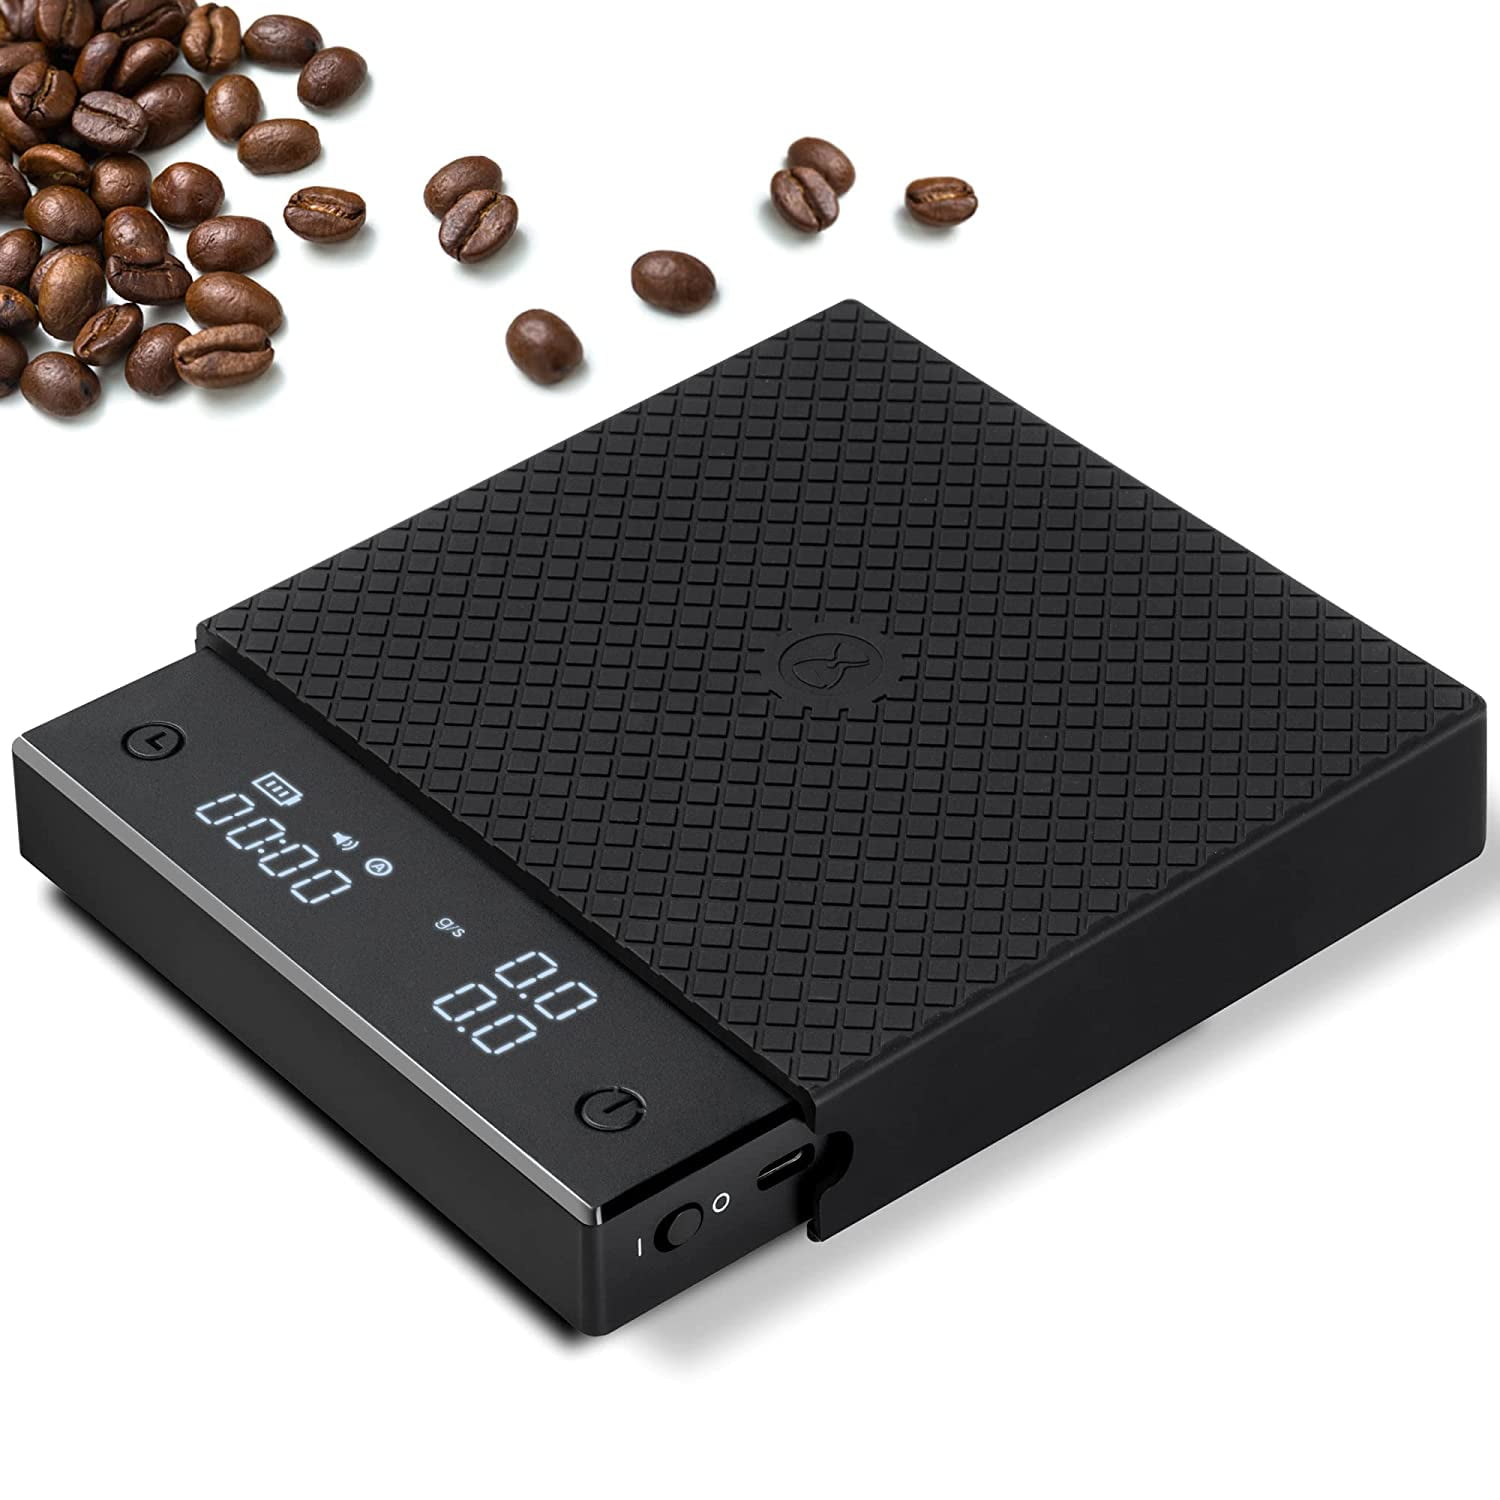 Scale Black Mirror Plus White - Timemore - Espresso Gear